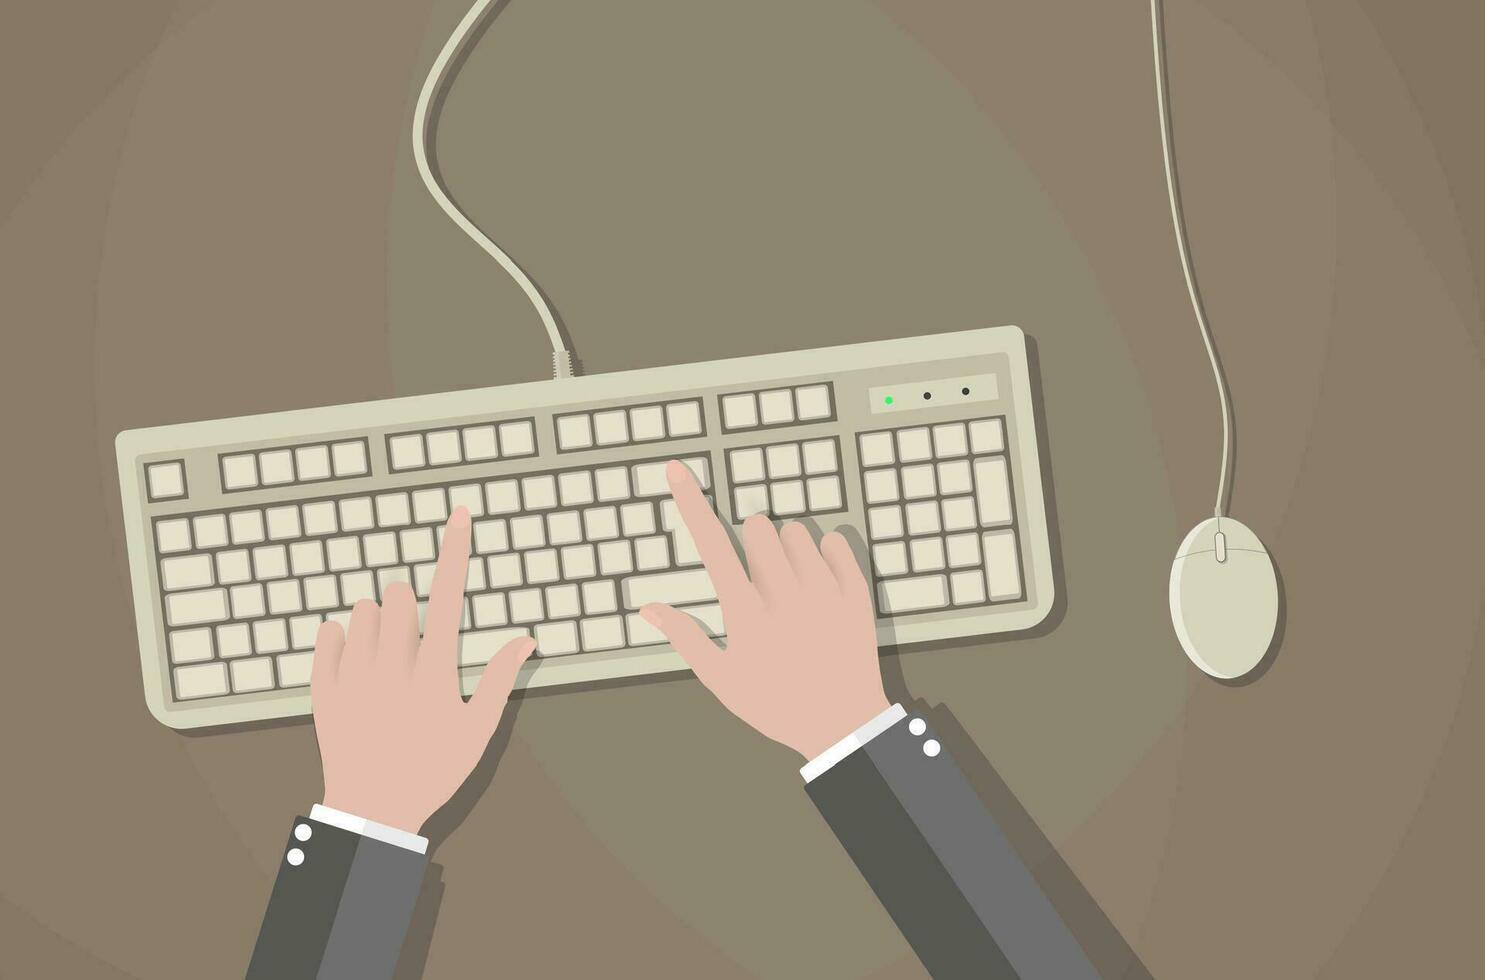 tecknad serie händer på vit tangentbord och mus av dator. skrivbord kontor arbetstagare begrepp. dator, internet, skriver. vektor illustration i platt design på brun bakgrund